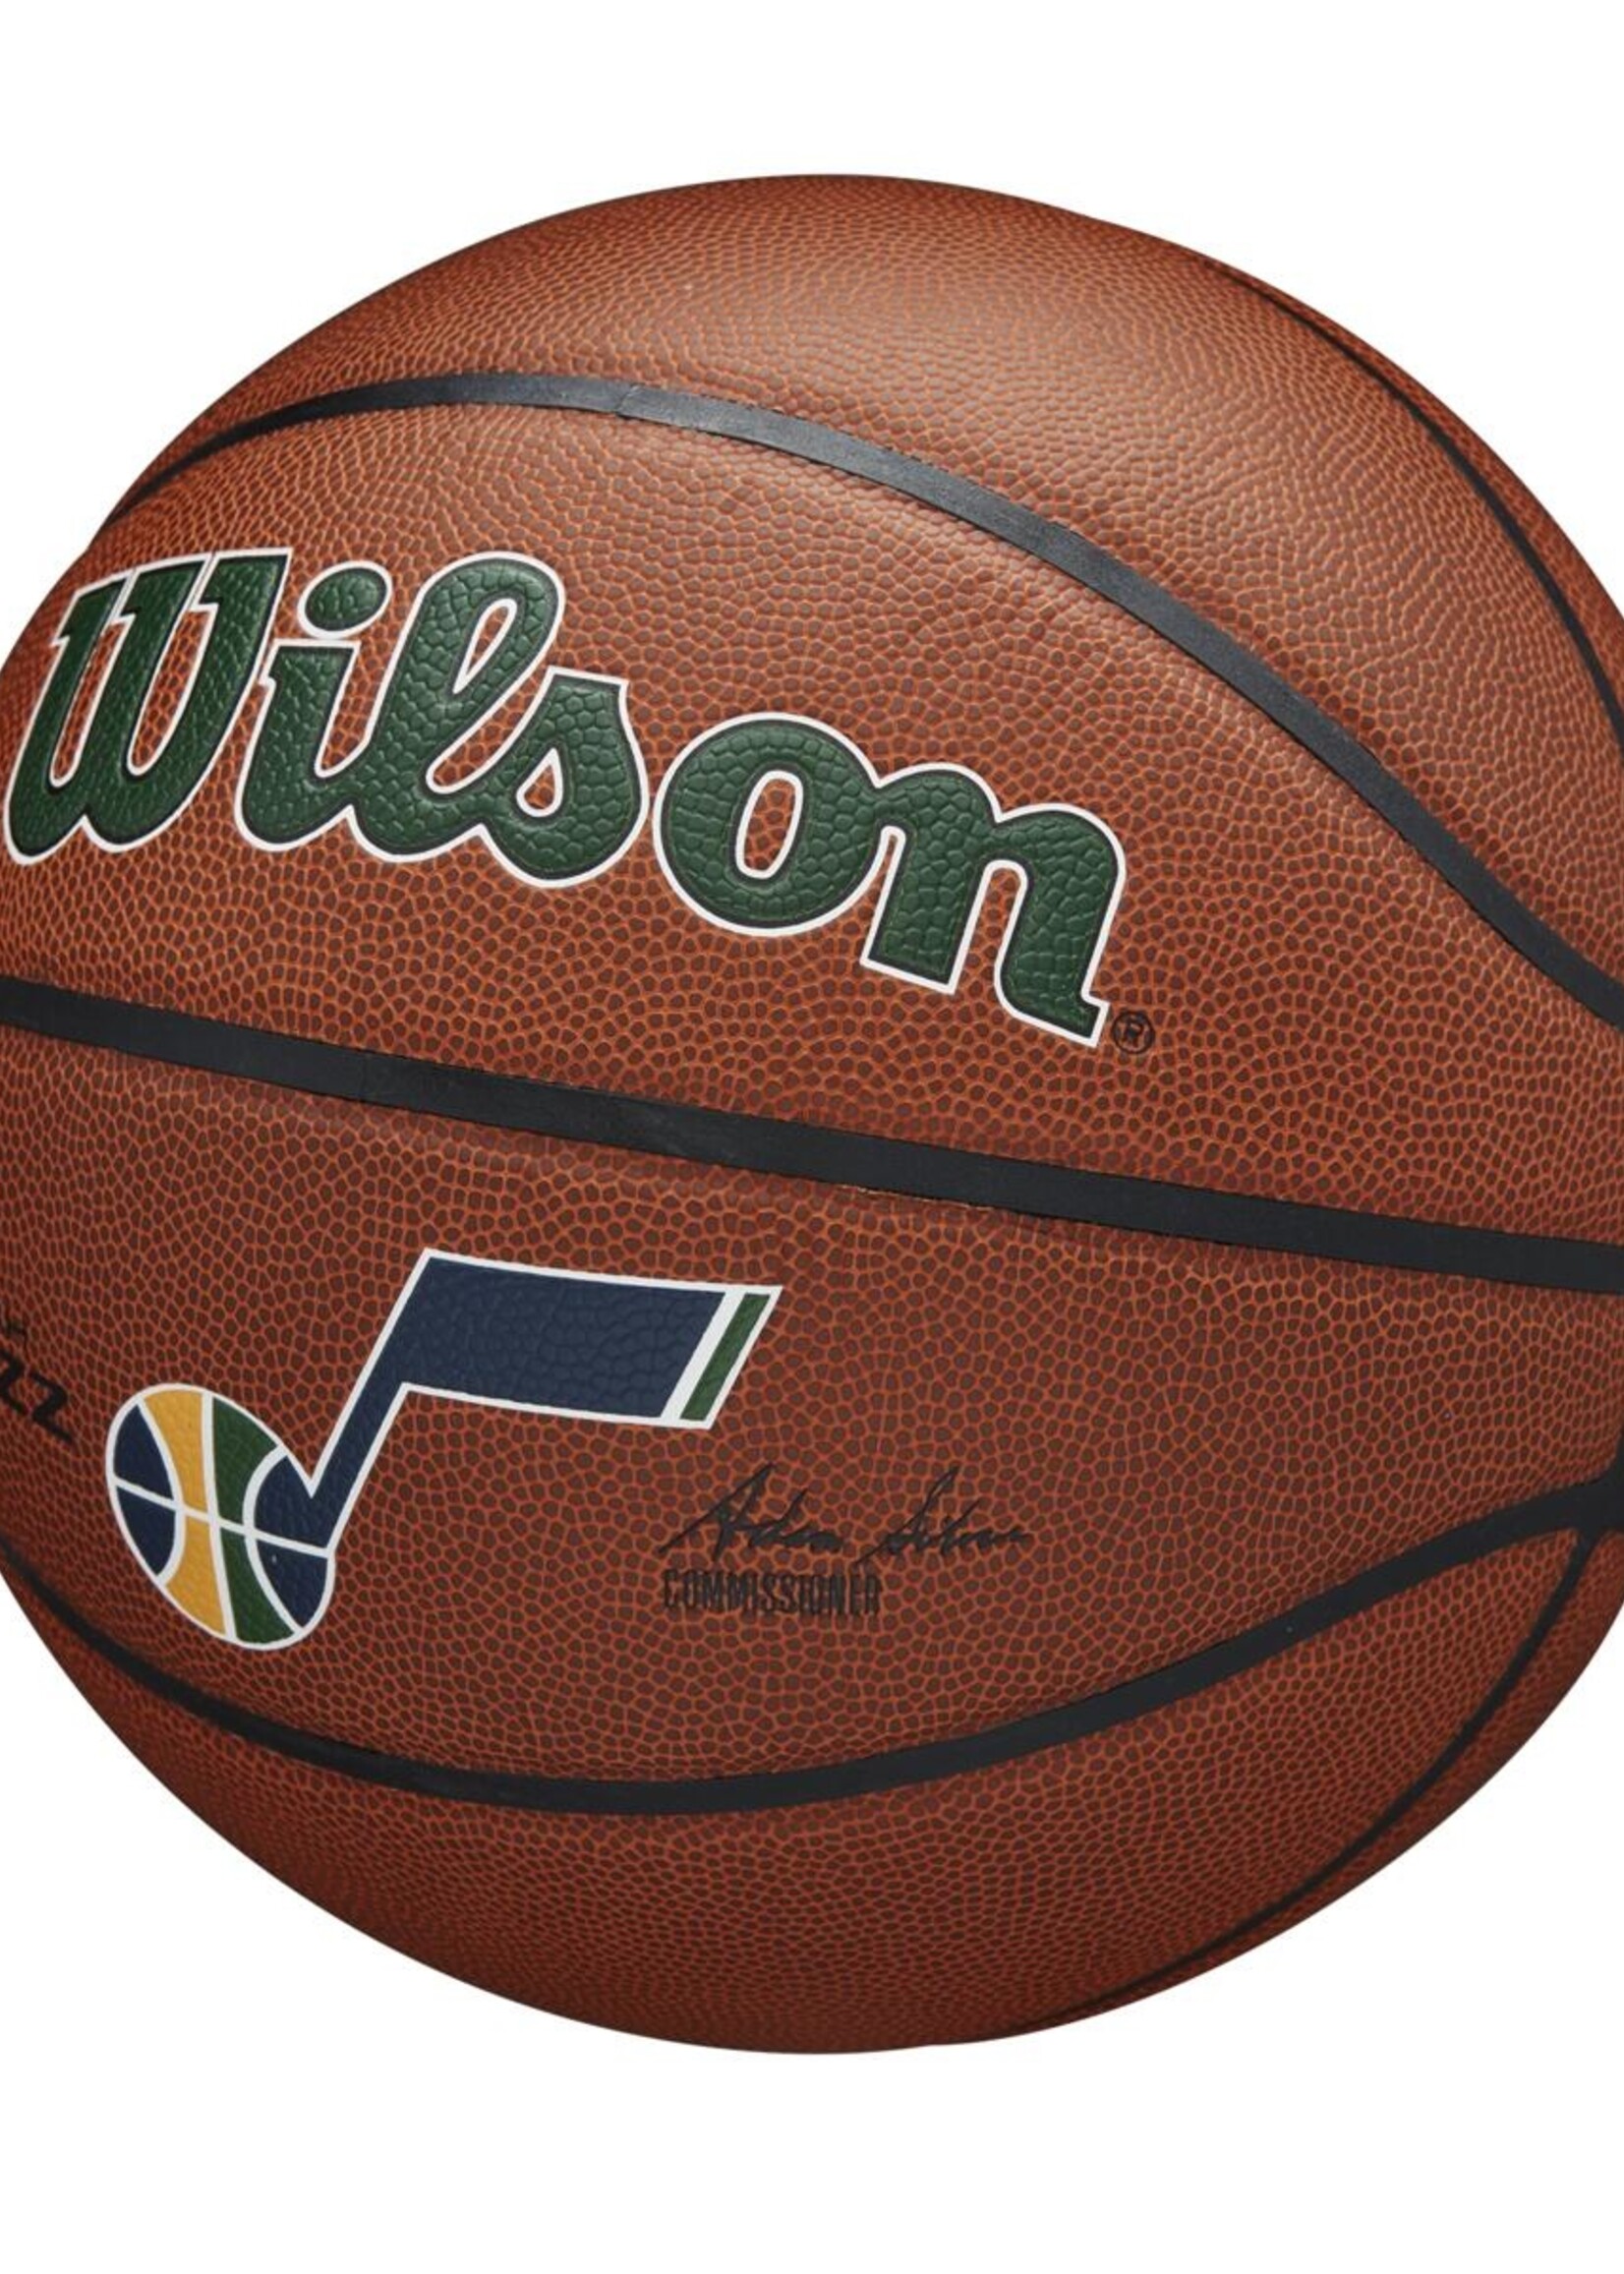 Wilson Wilson NBA UTAH JAZZ Composite Indoor / Outdoor Basketbal (7)